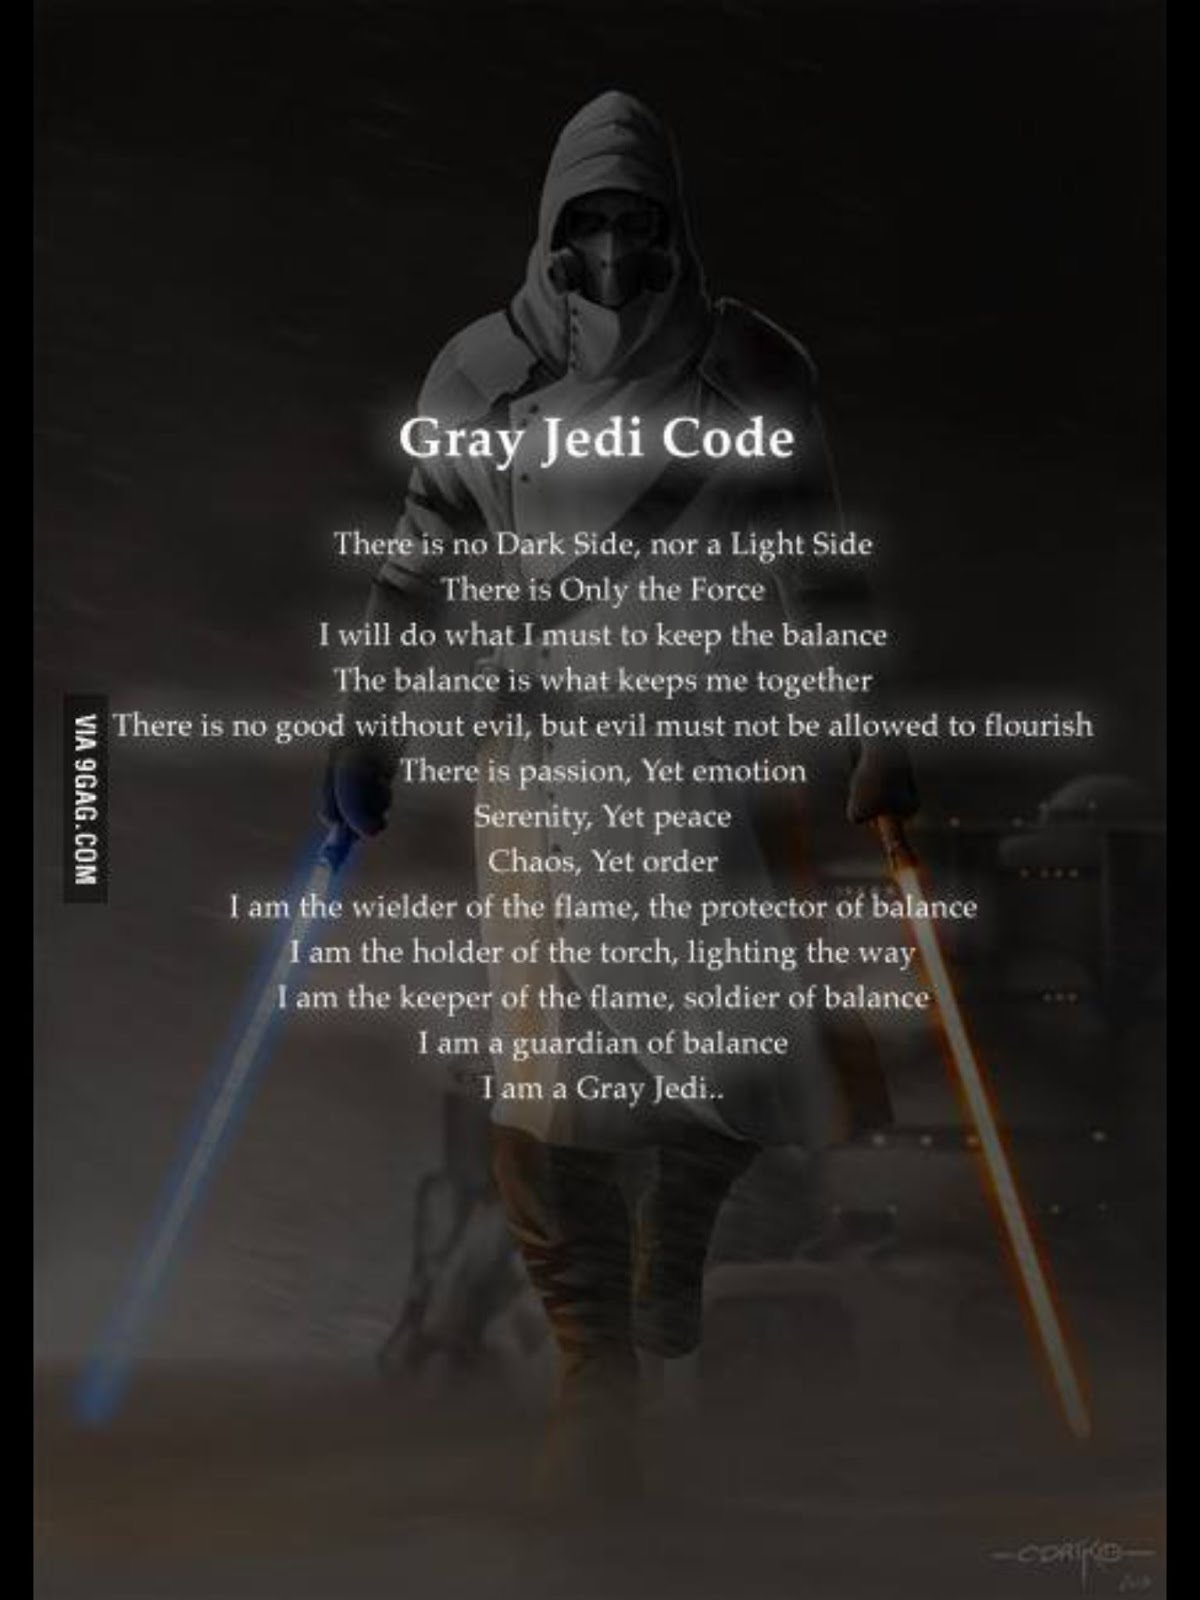 The grey Jedi